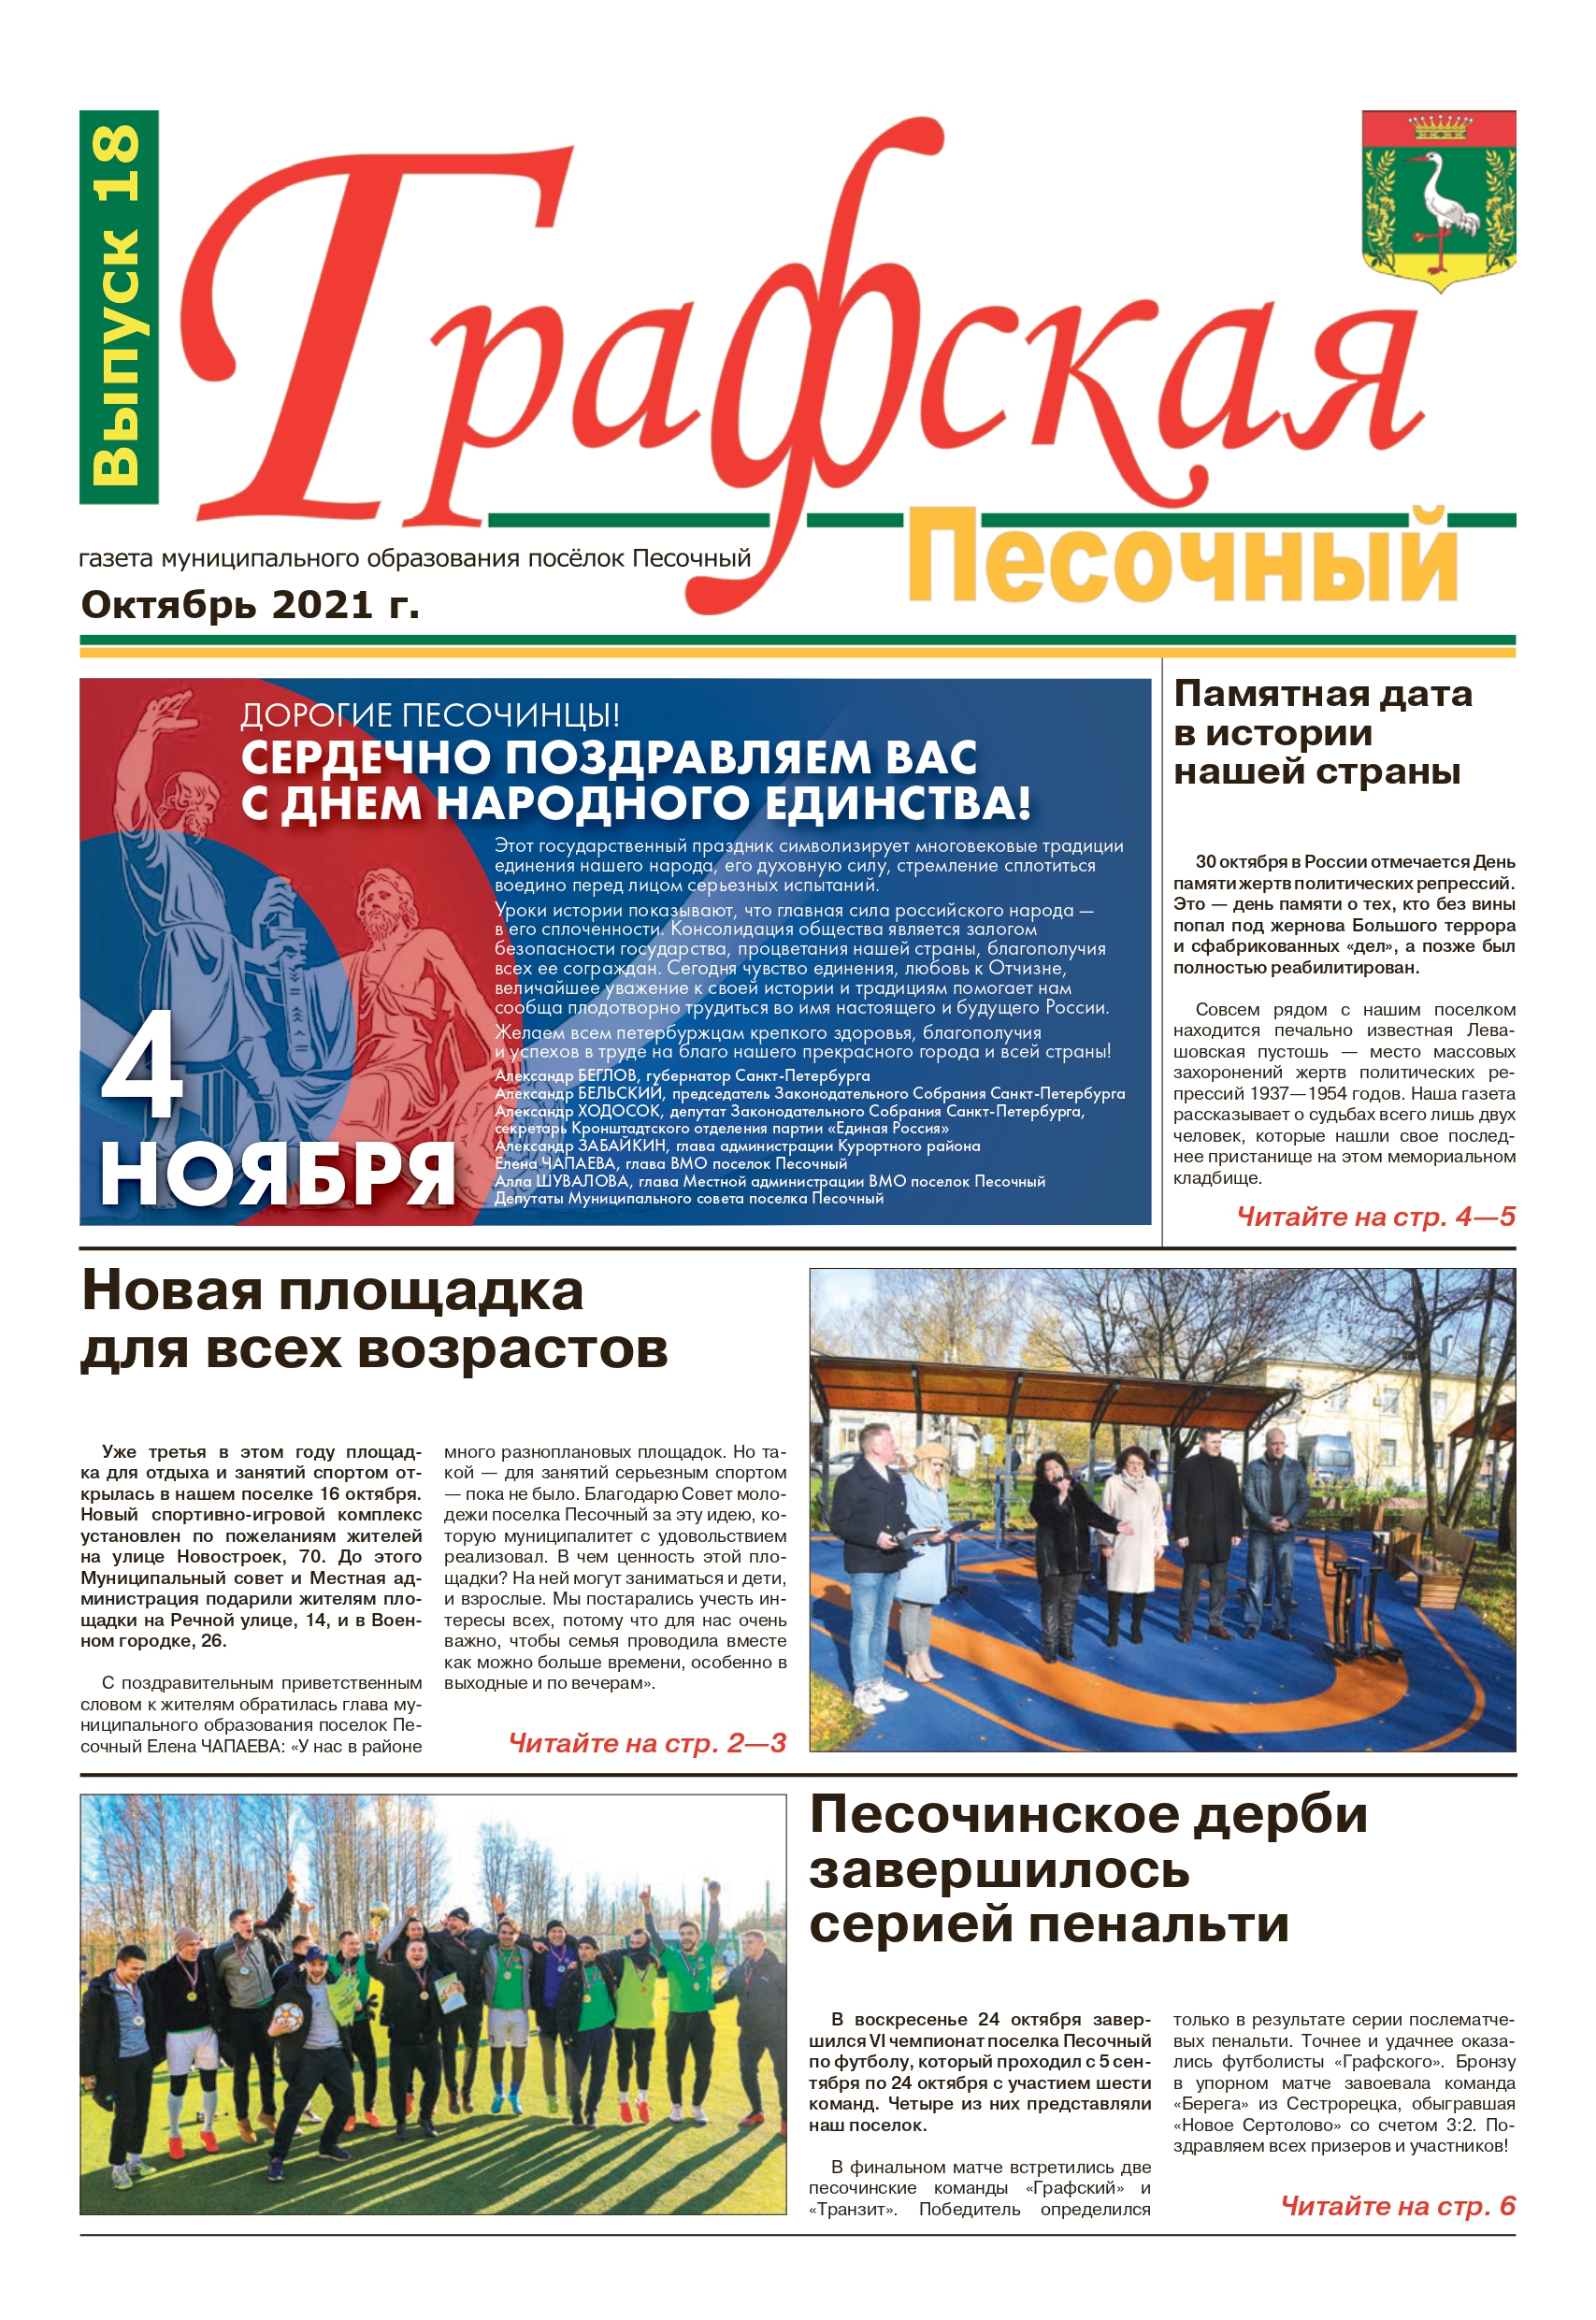 Газета "Графская" выпуск № 18, октябрь 2021